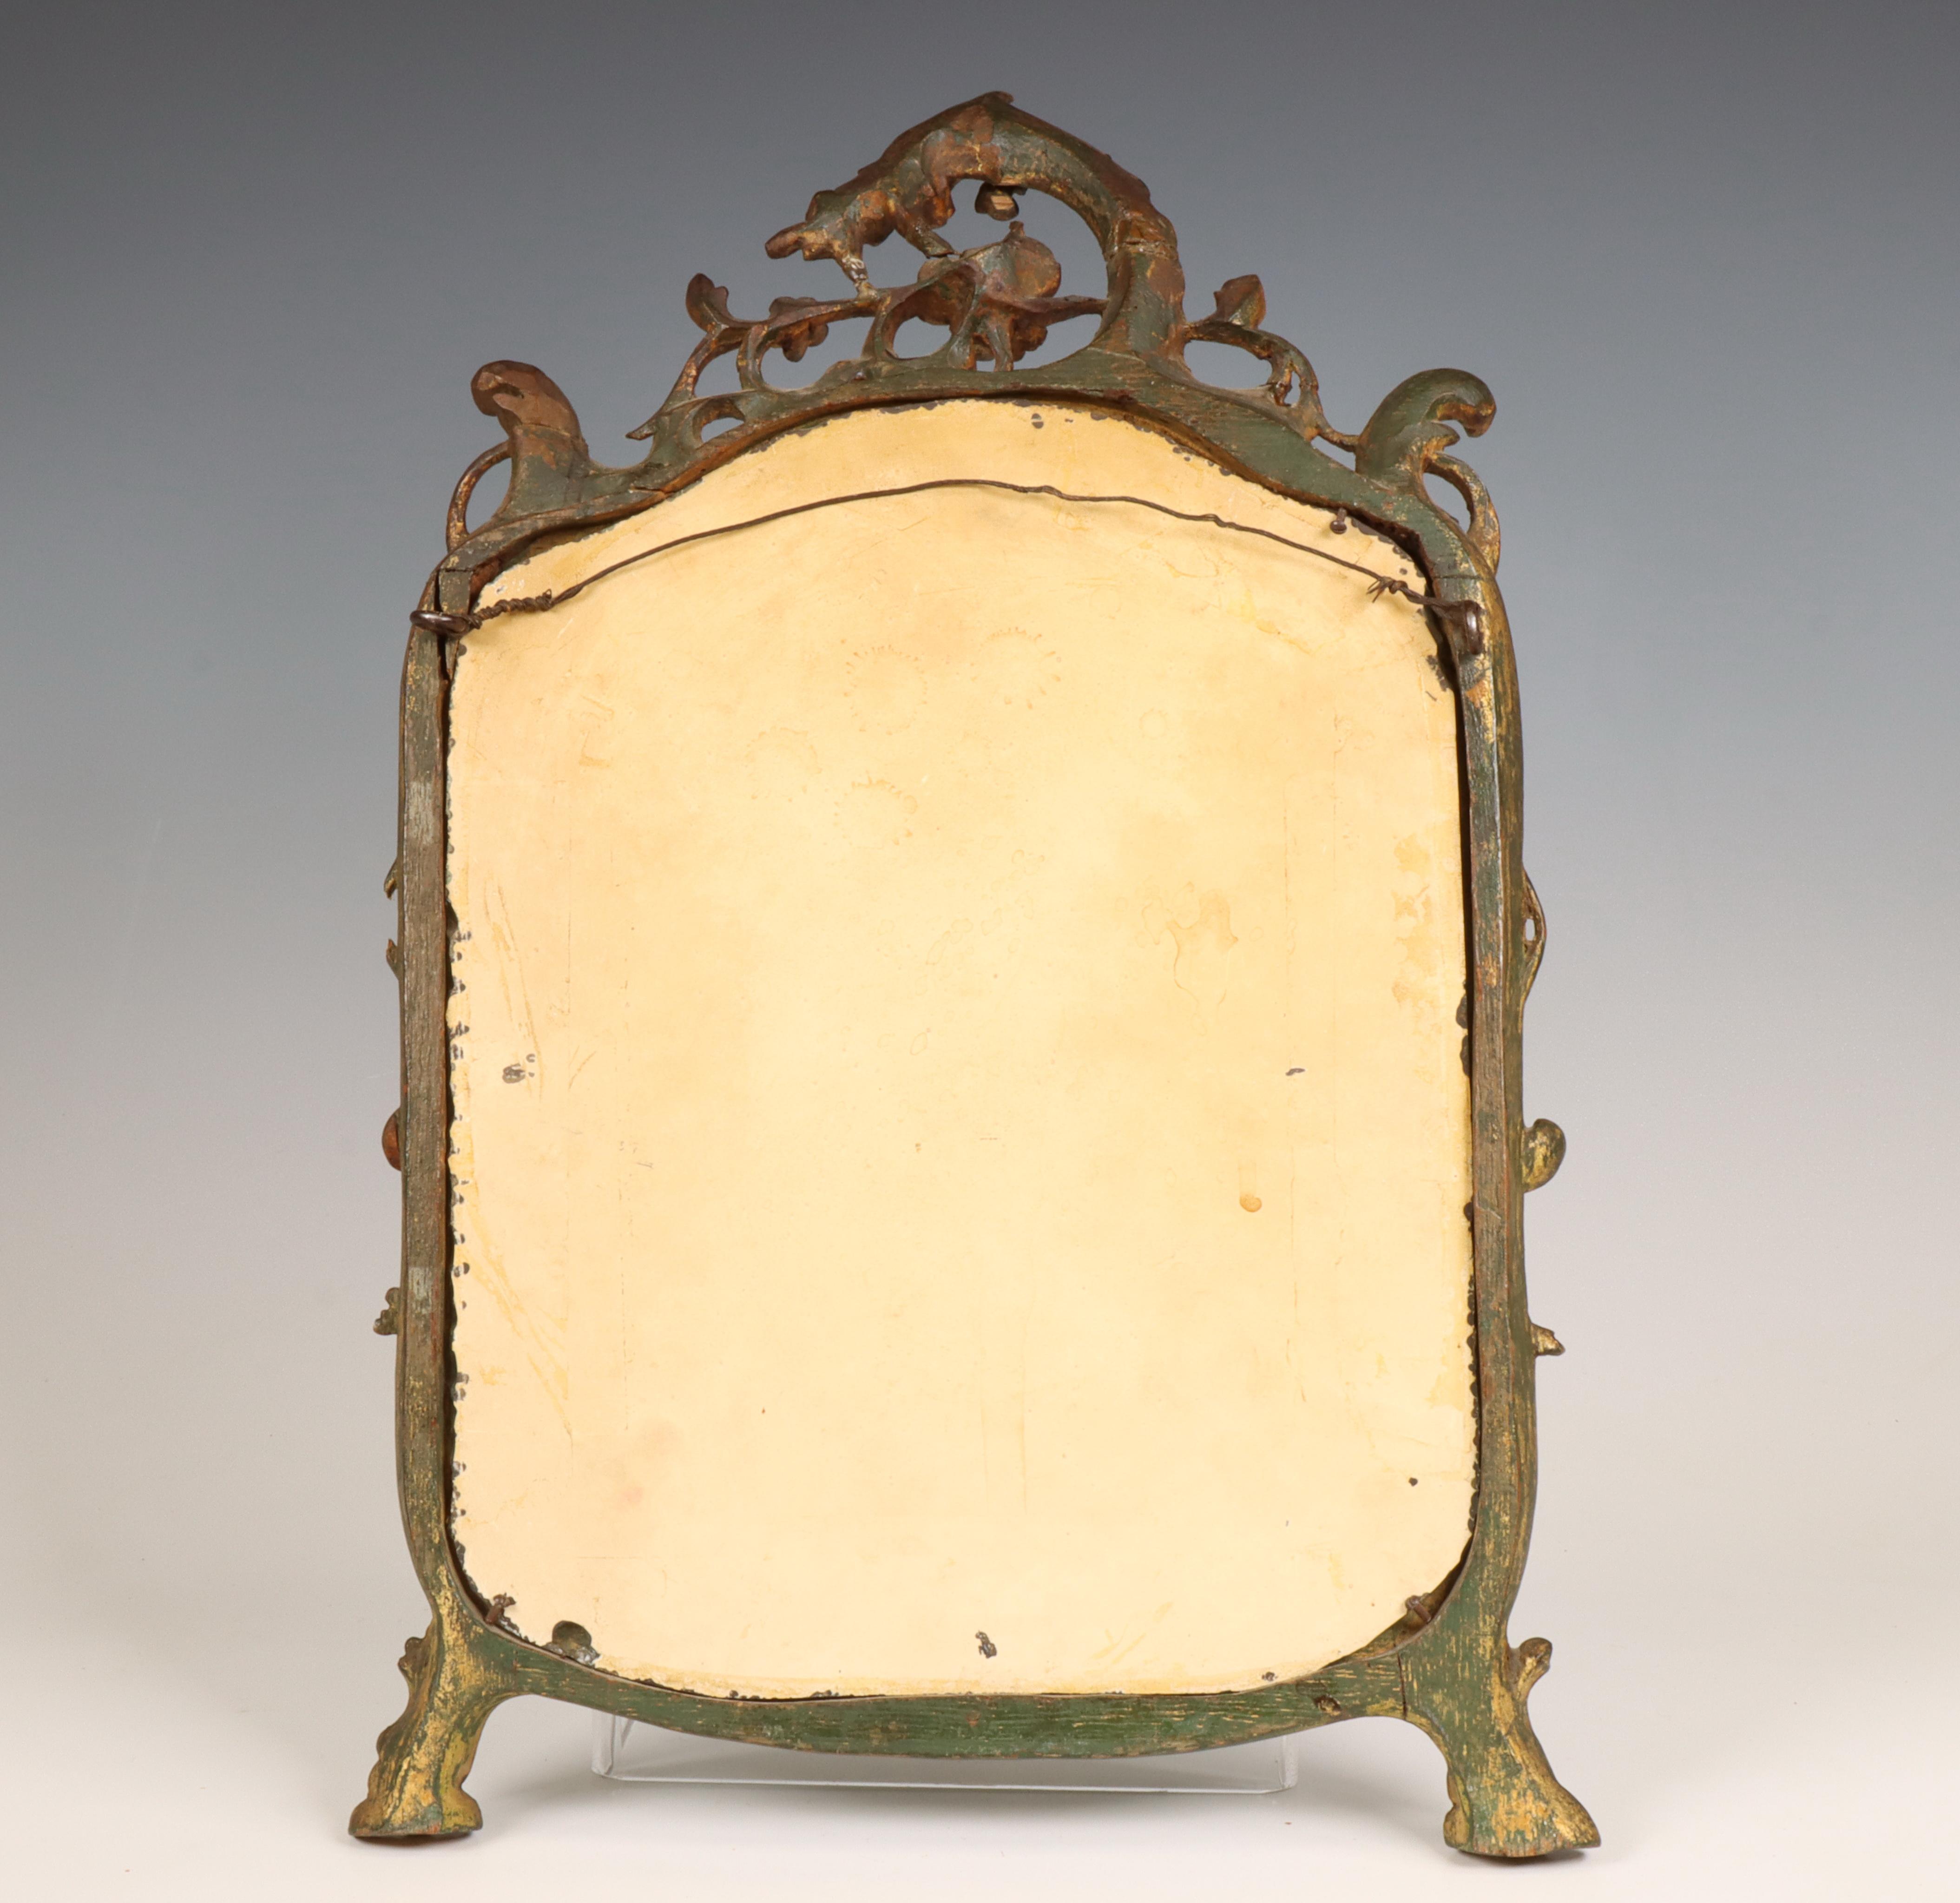 Holland, spiegel in gestoken houten lijst, Louis XV, 18e eeuw. - Image 2 of 2